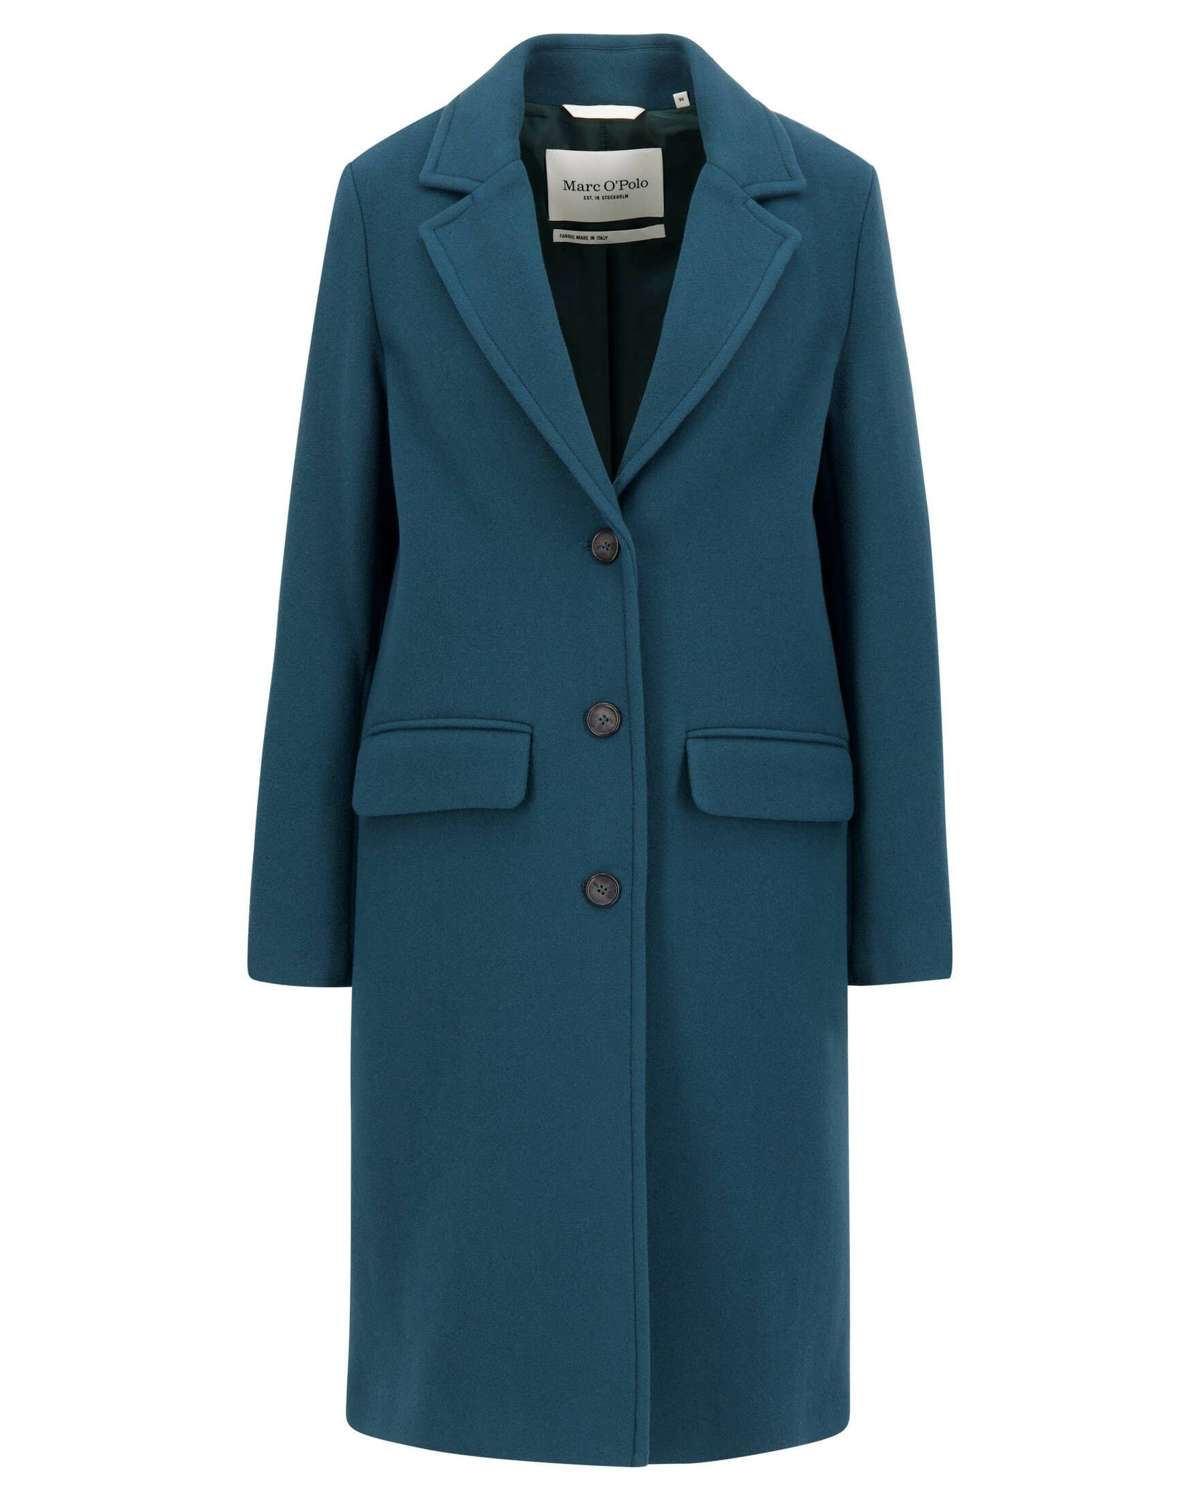 Шерстяное пальто из итальянской смеси натуральной шерсти высокого качества.